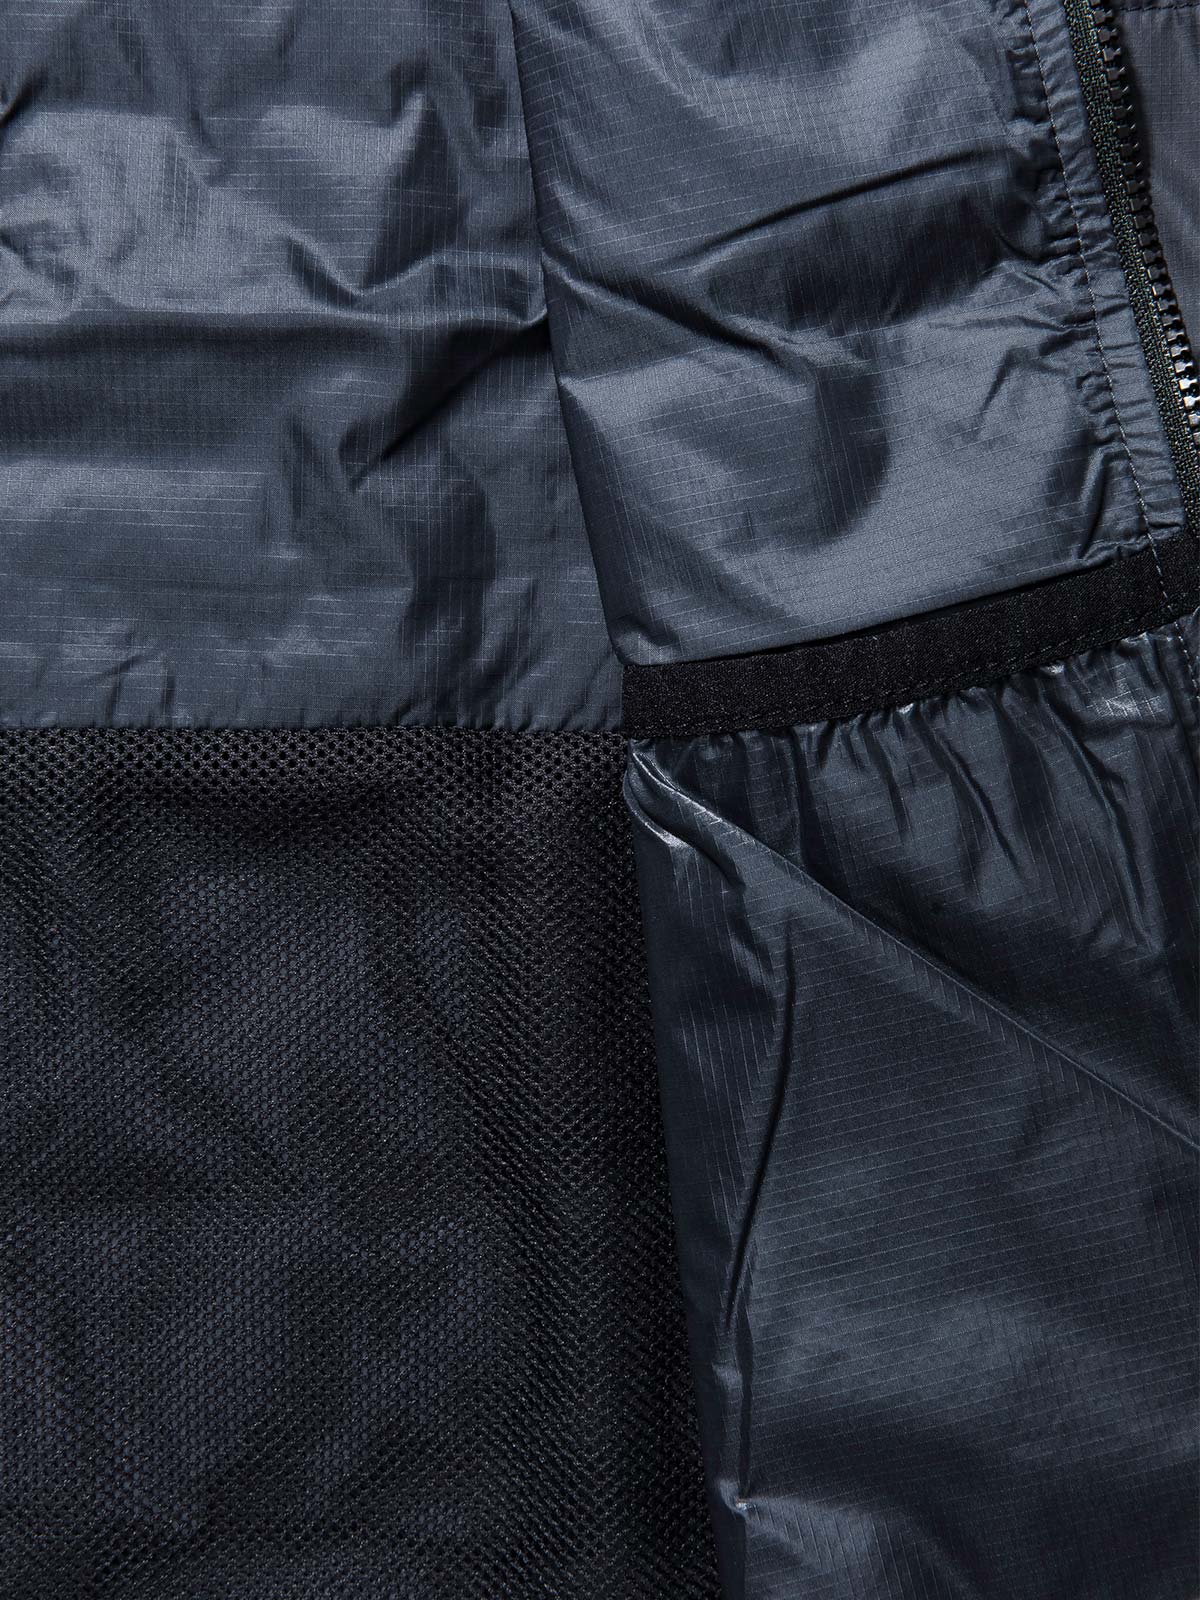 Acre Series Vest från Mission Workshop - vädertåliga väskor och tekniska kläder - San Francisco och Los Angeles - byggda för att tåla - garanterade för alltid